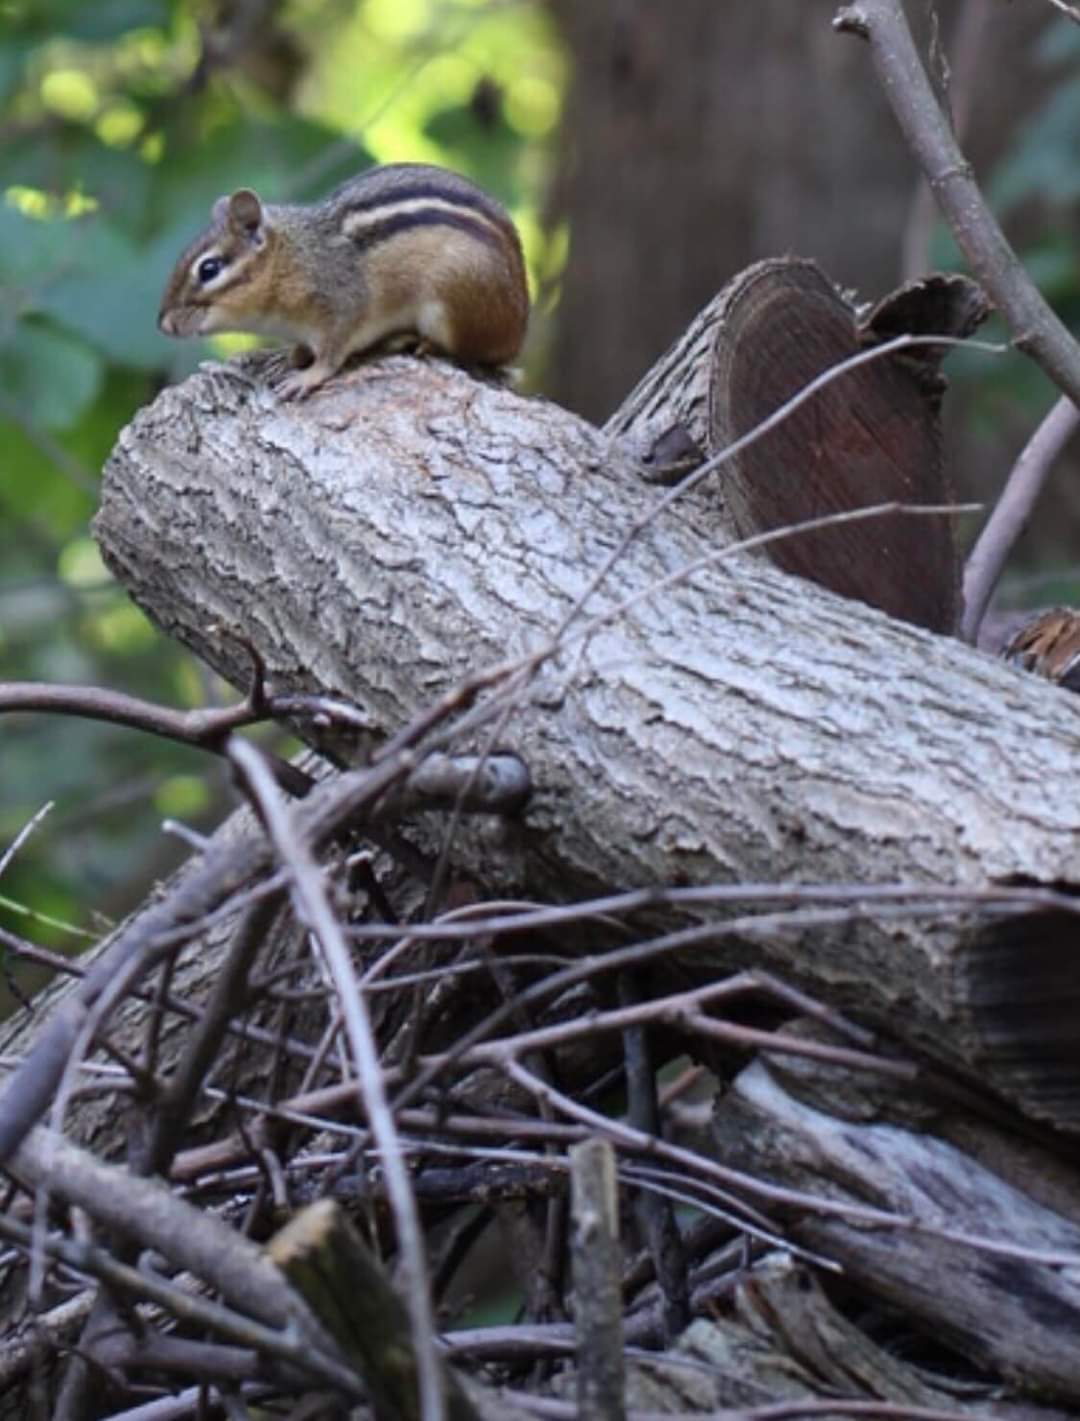 Adult chipmunk sitting on a fallen log